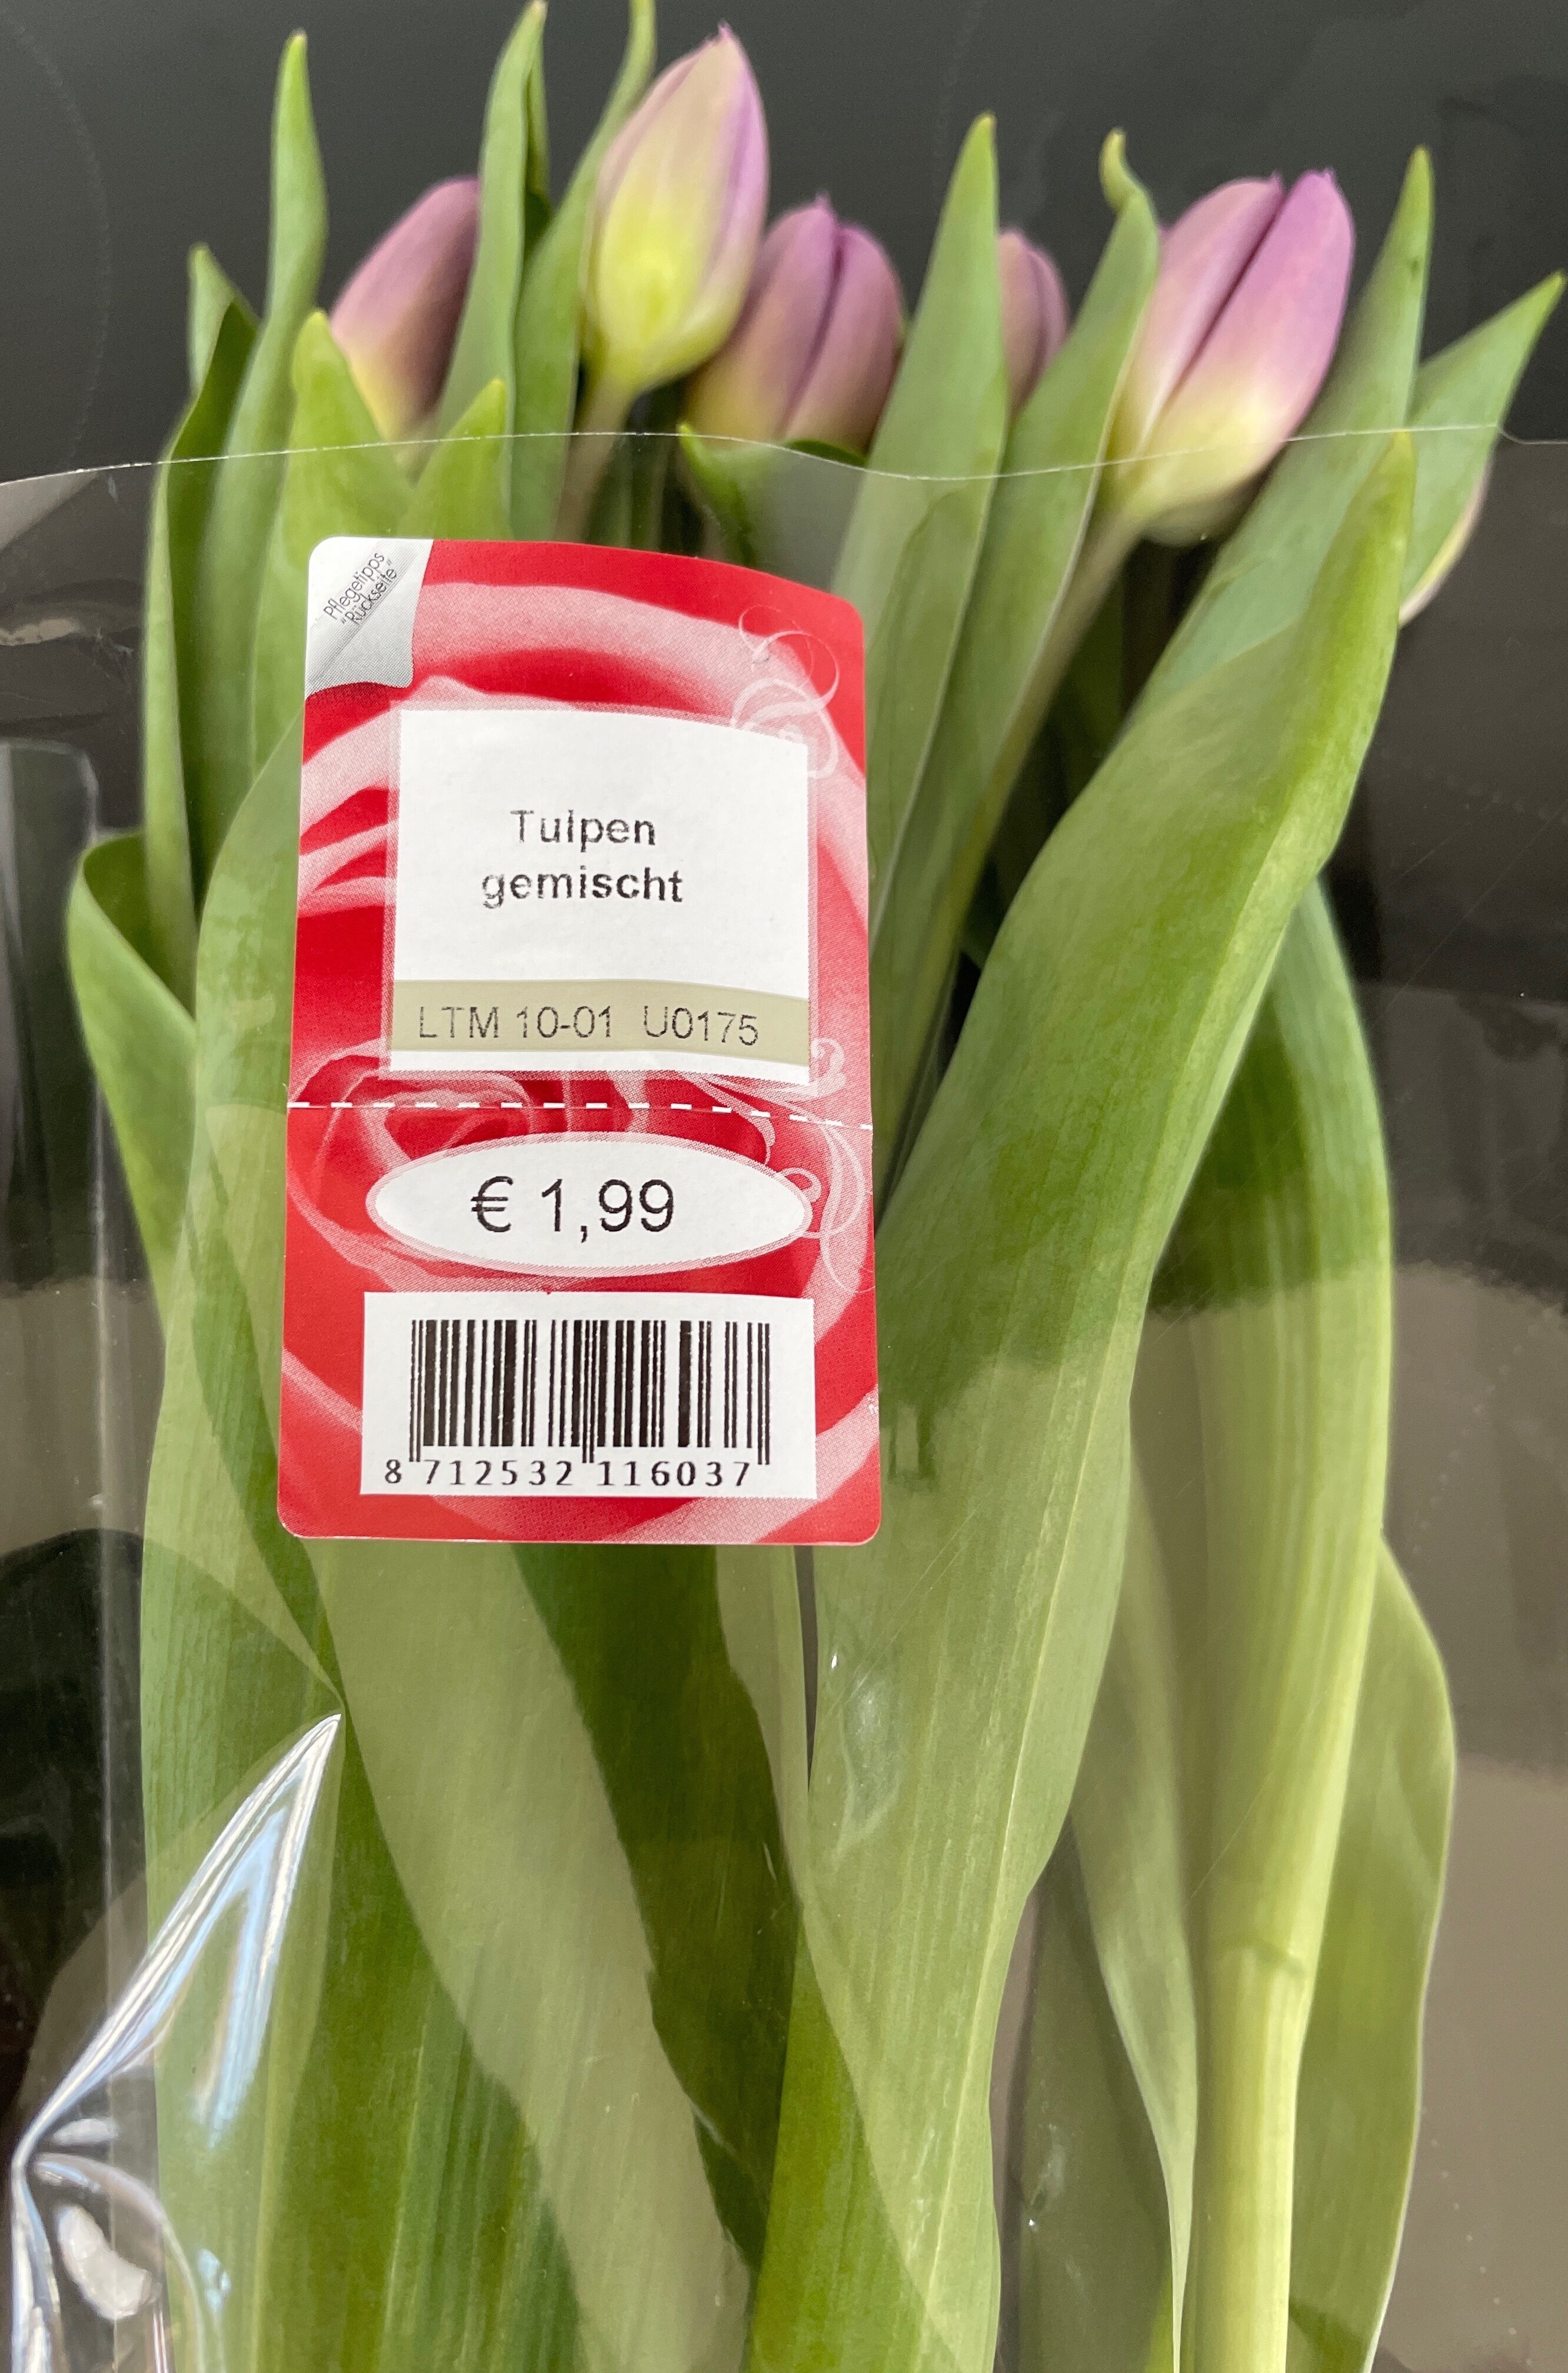 Tulpen gemischt - Produit - de